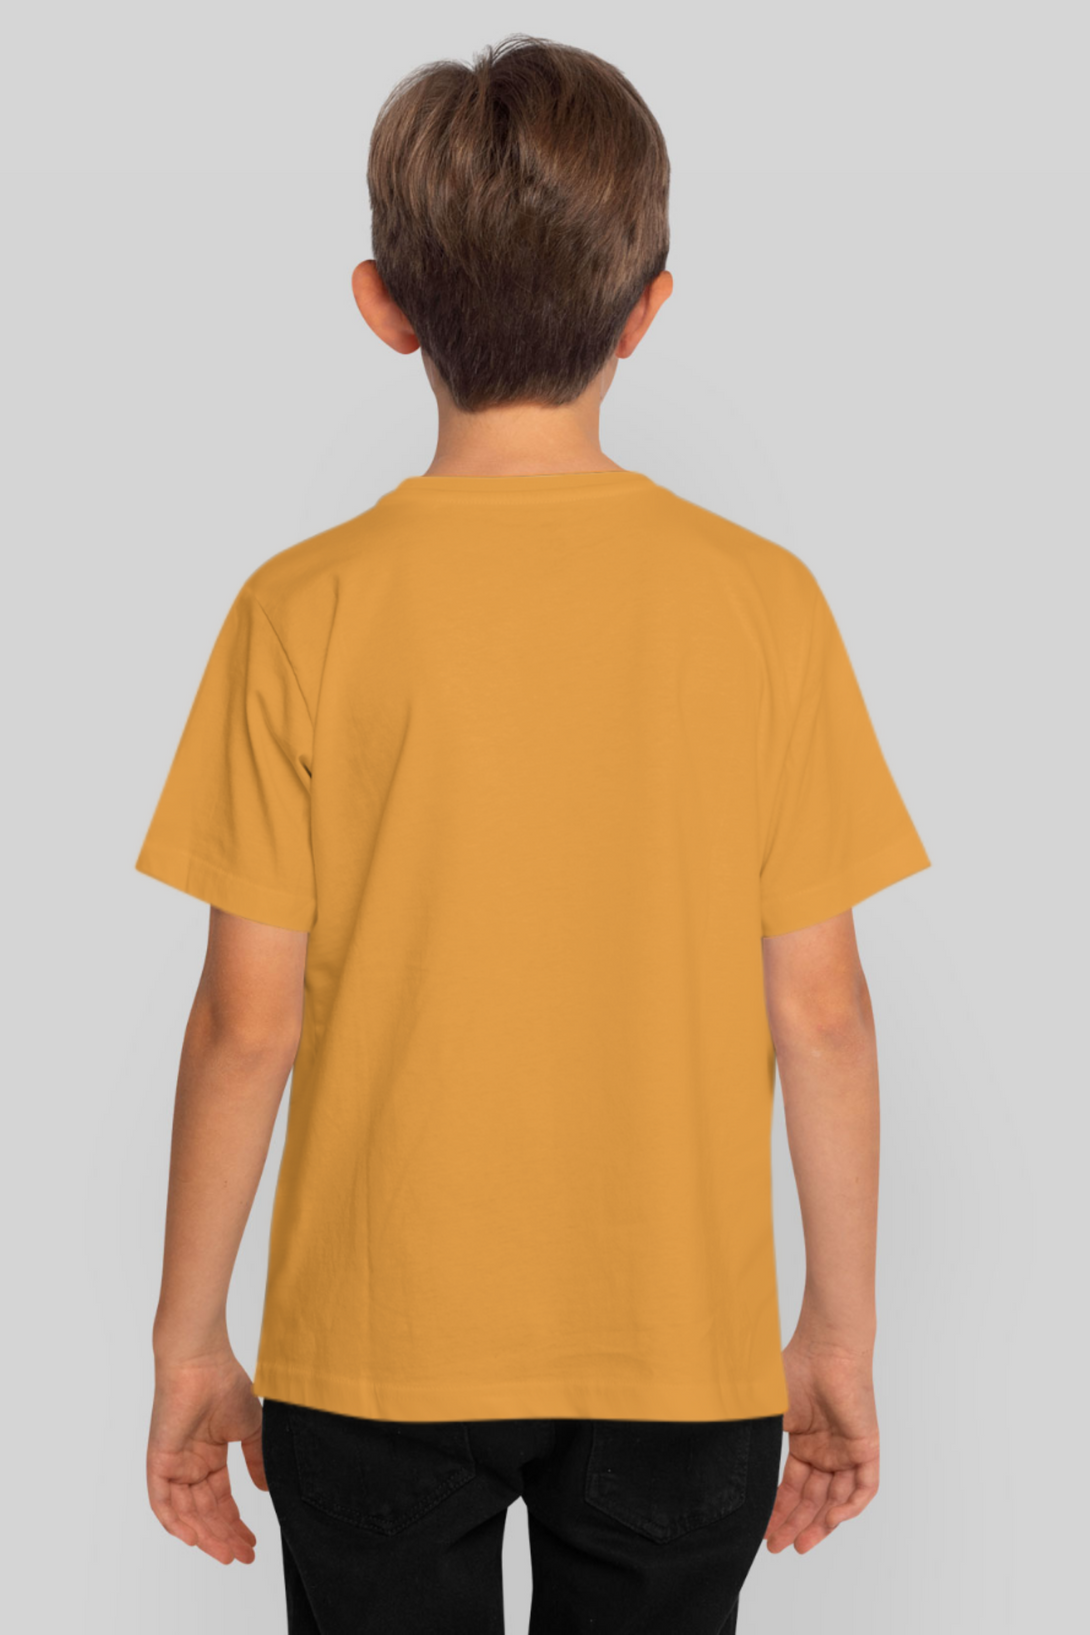 Golden Yellow T-Shirt For Boy - WowWaves - 2